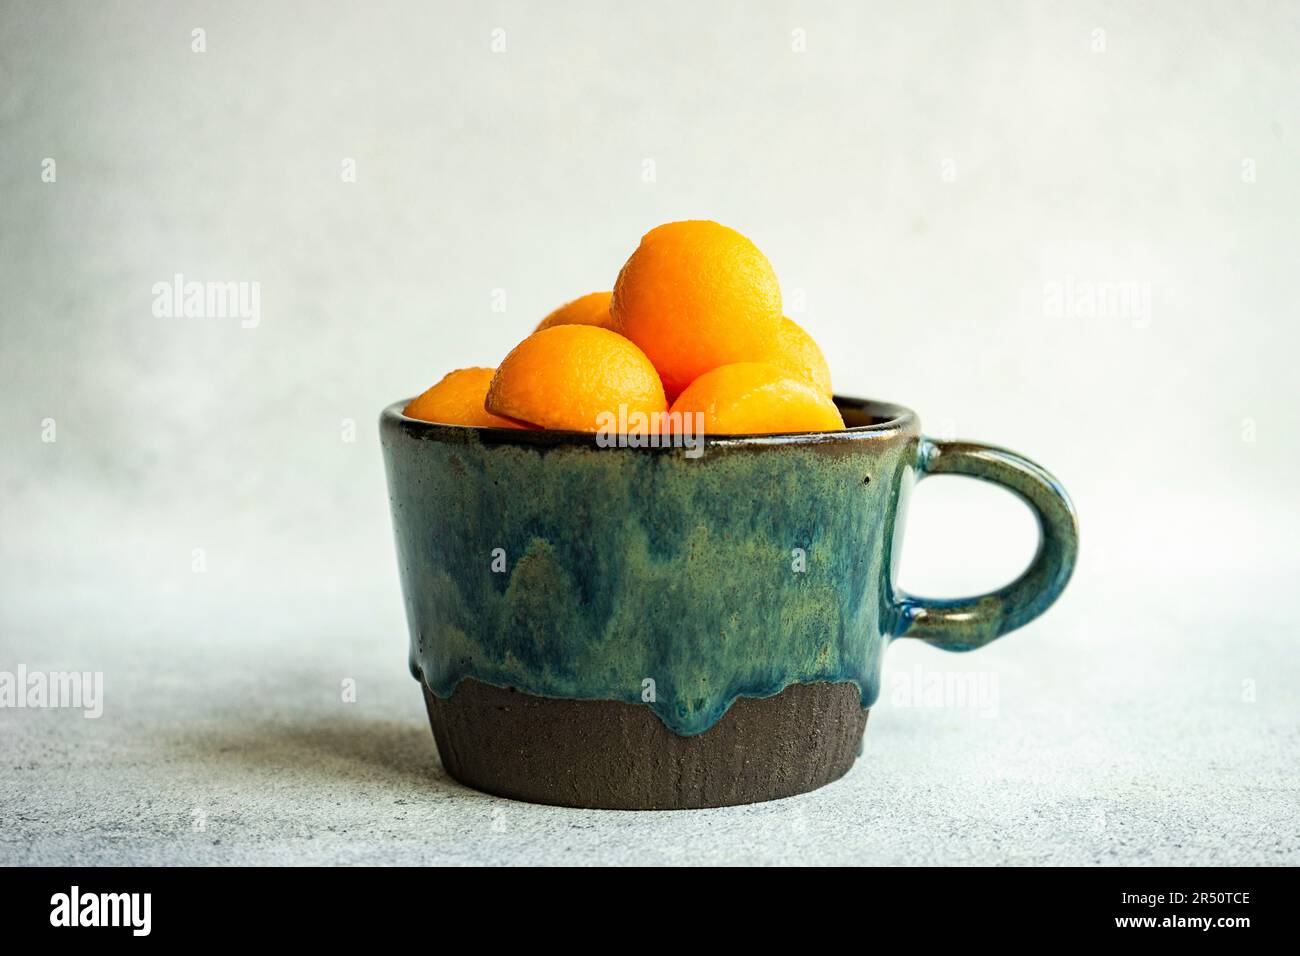 Balls of ripe cantaloupe melon in a ceramic cup Stock Photo